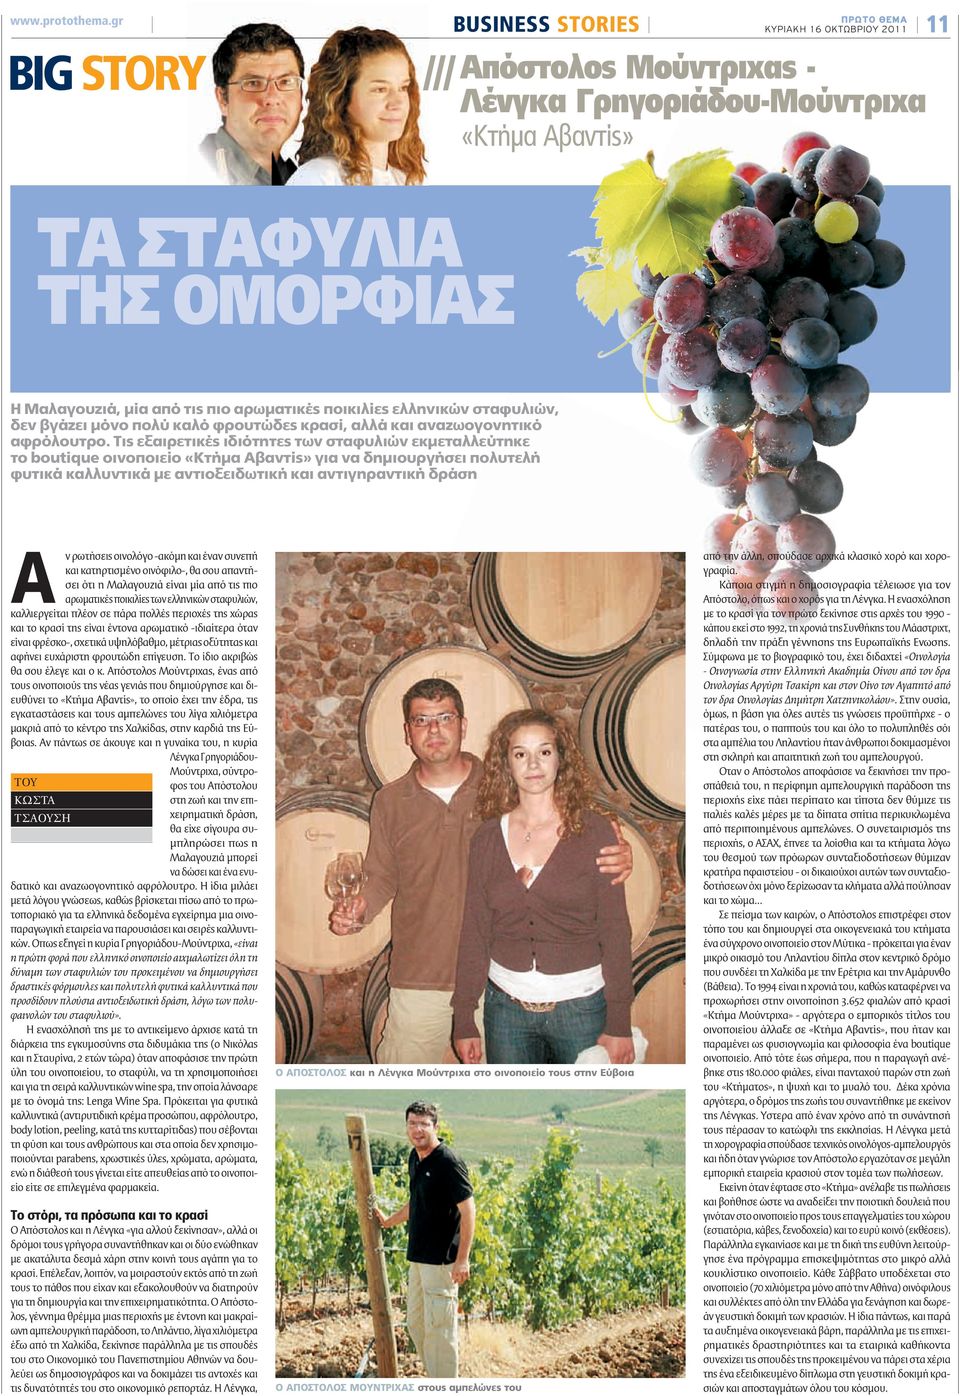 ποικιλίες ελληνικών σταφυλιών, δεν βγάζει μόνο πολύ καλό φρουτώδες κρασί, αλλά και αναζωογονητικό αφρόλουτρο.